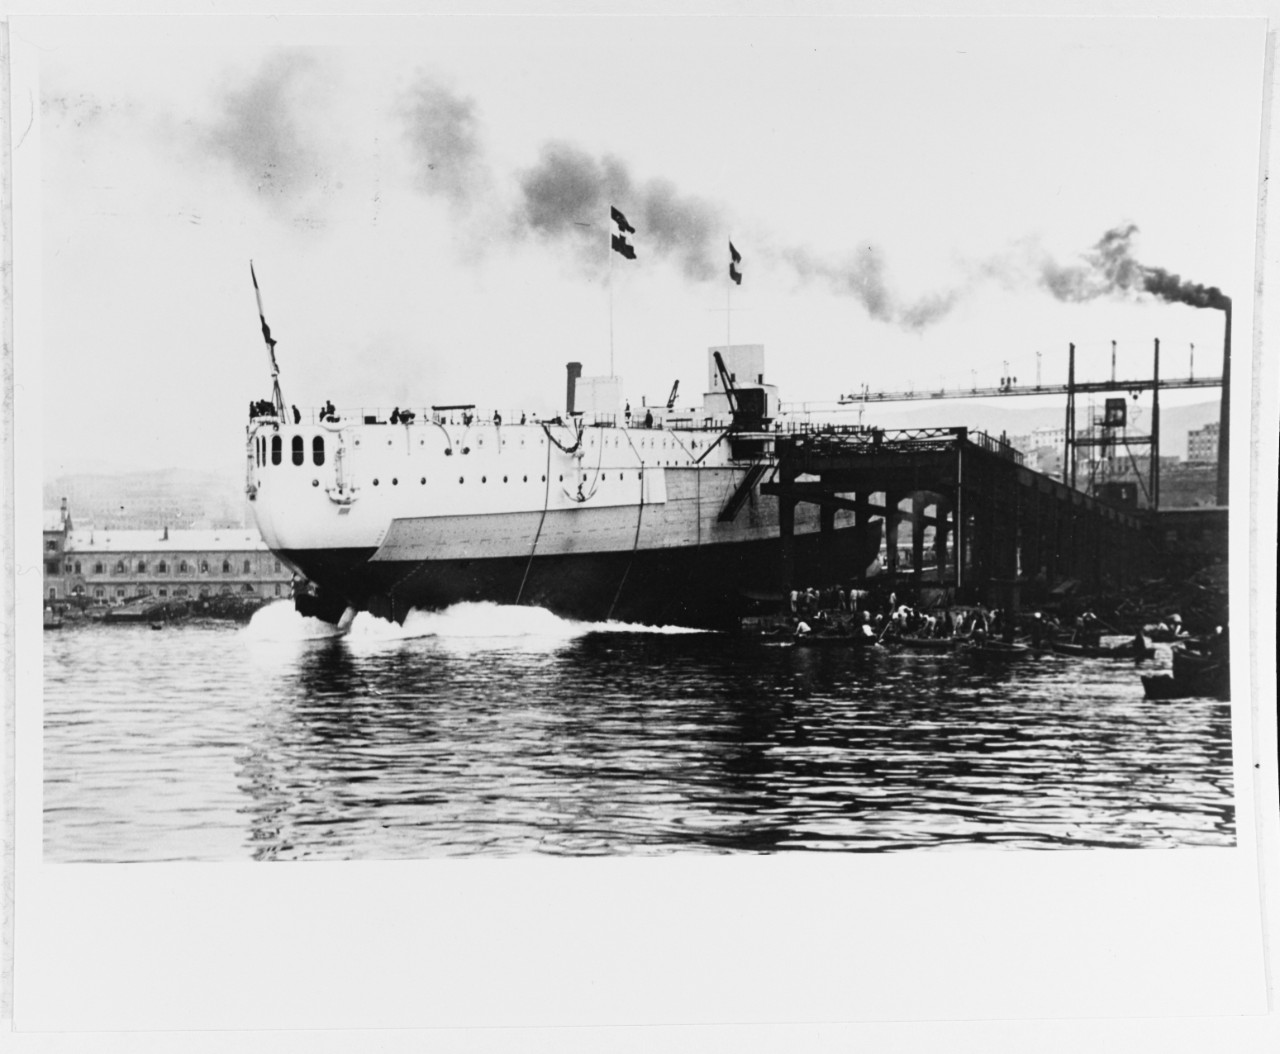 PRINZ EUGEN Austrian Battleship, 1912-22